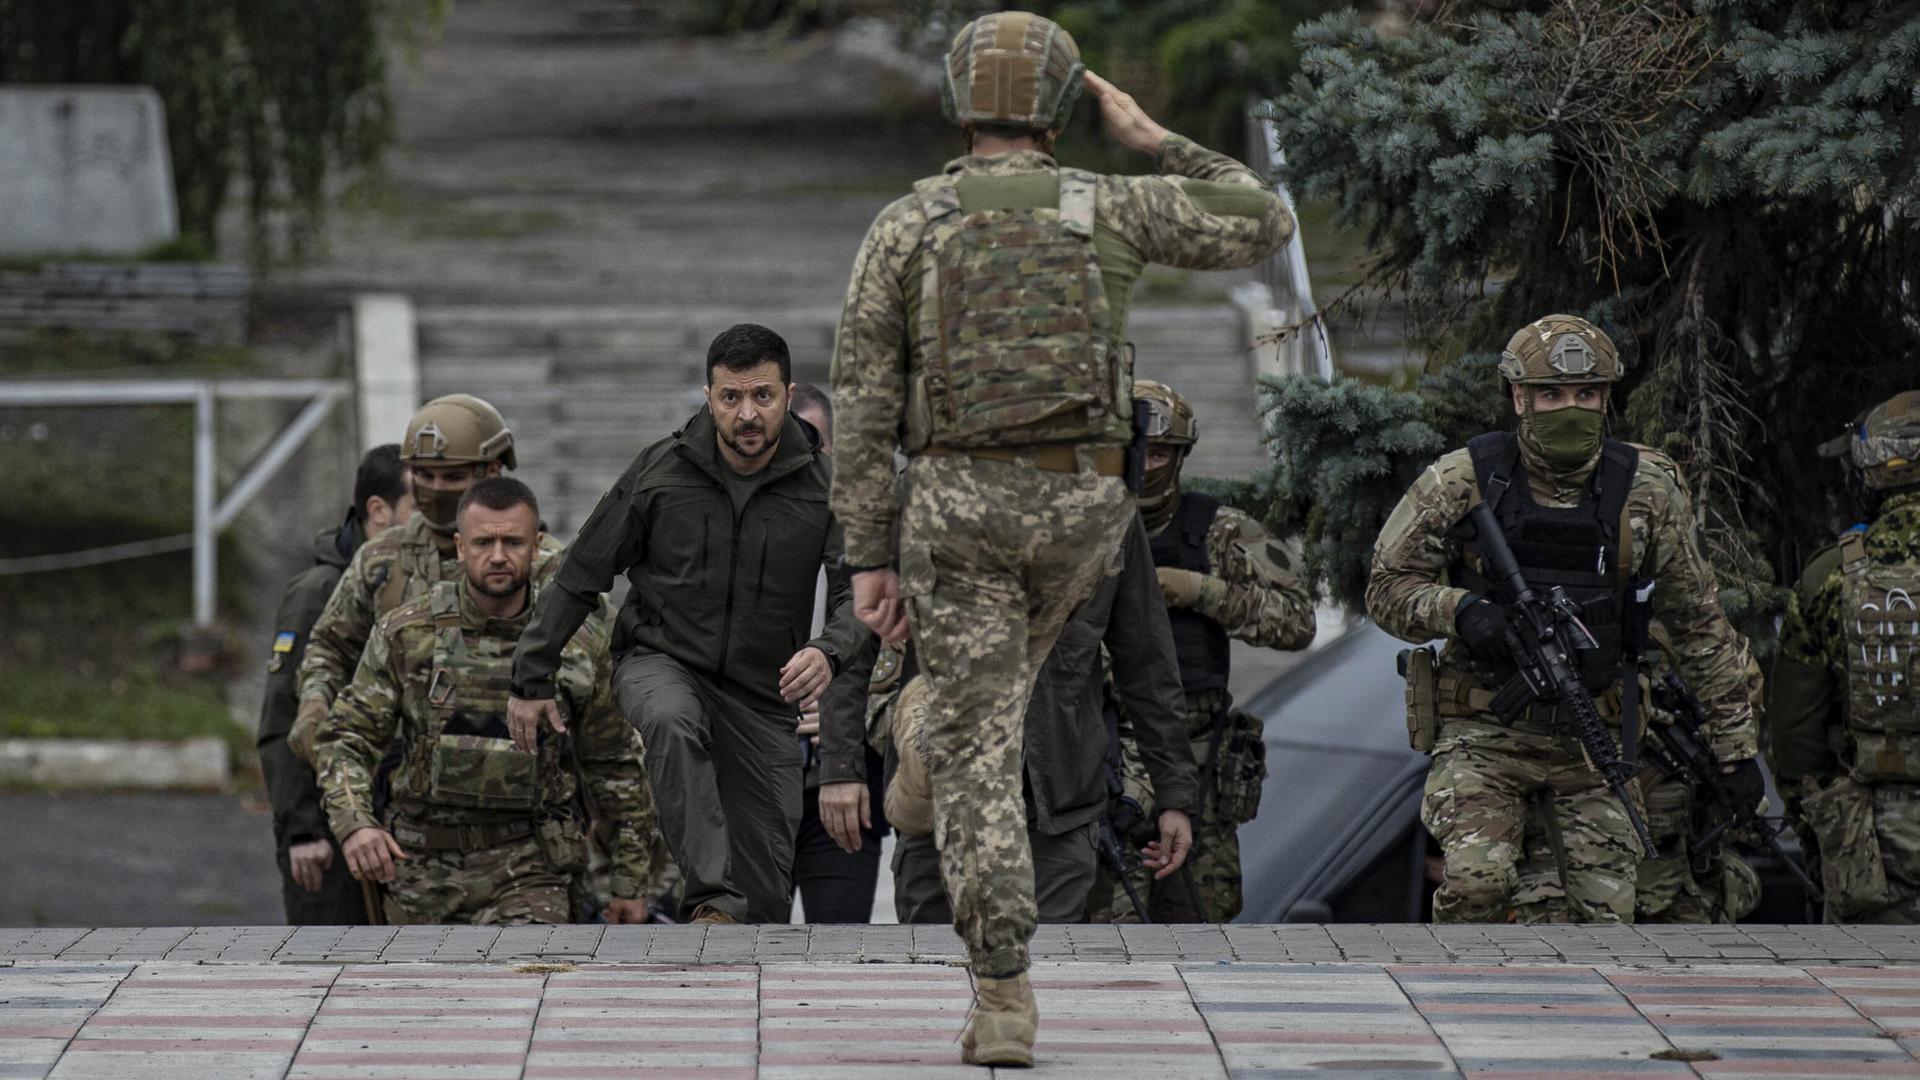 Der ukrainische Präsident Wolodymyr Zelenskyy auf dem Weg zur Flaggenhissungszeremonie in Izjum, nachdem die ukrainischen Streitkräfte die Kontrolle über die Stadt von den russischen Streitkräften in Charkiw, Ukraine, am 14. September 2022 übernommen haben.
